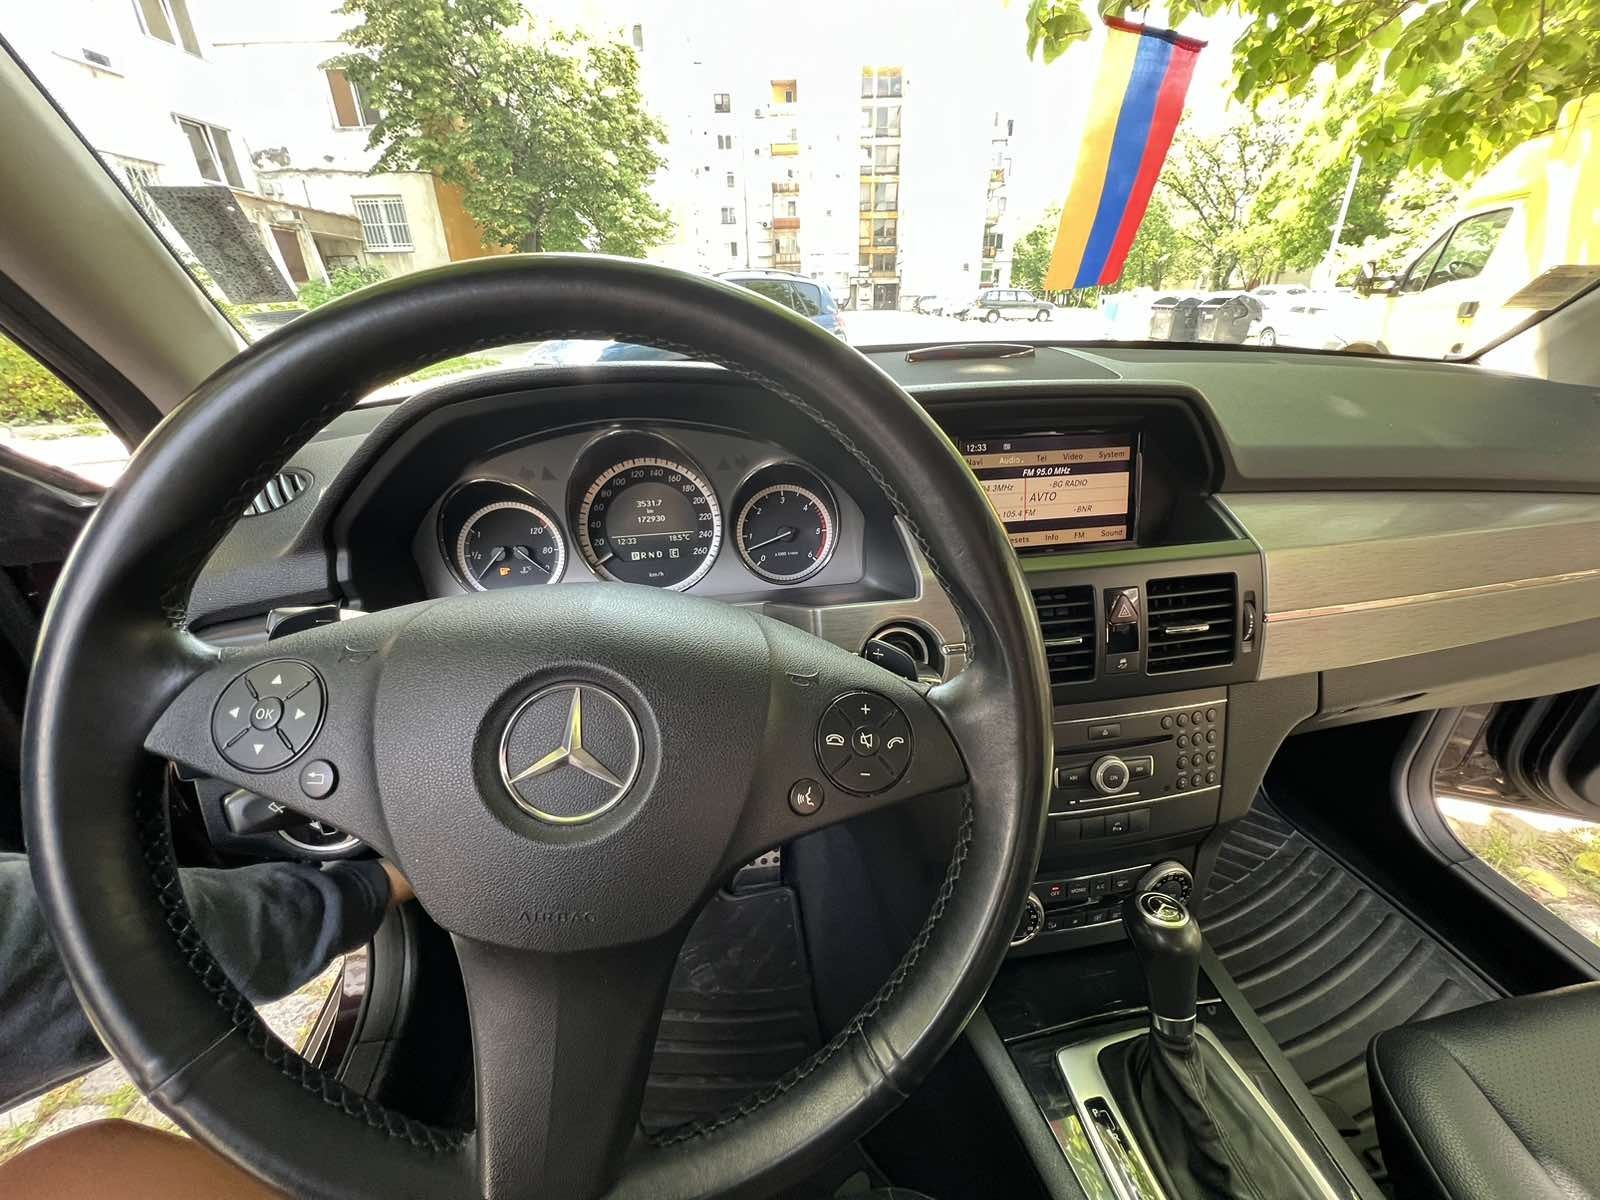 Mercedes GLK AMG Fey's